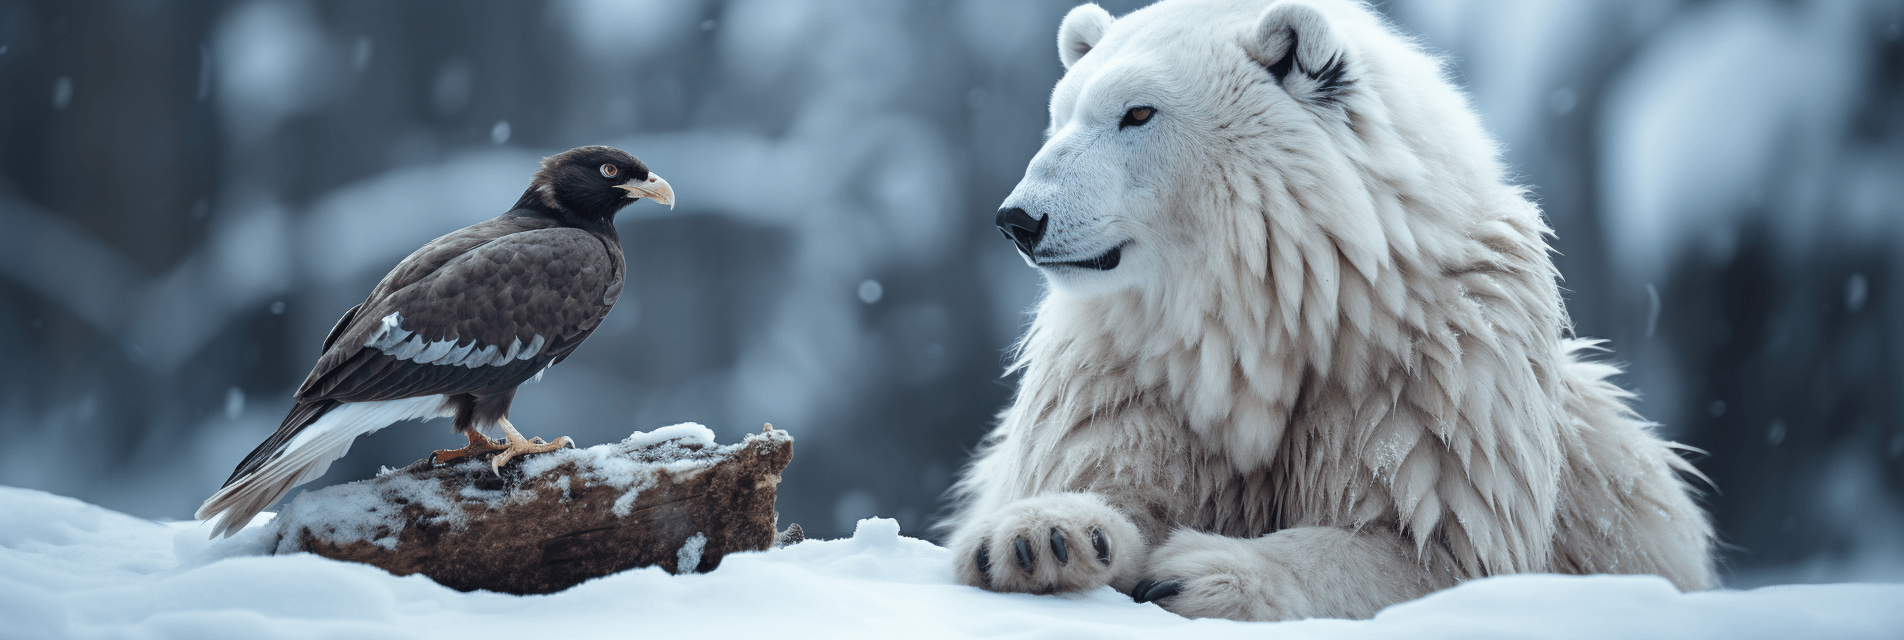 Stoic Polar Bear & Snow Owl